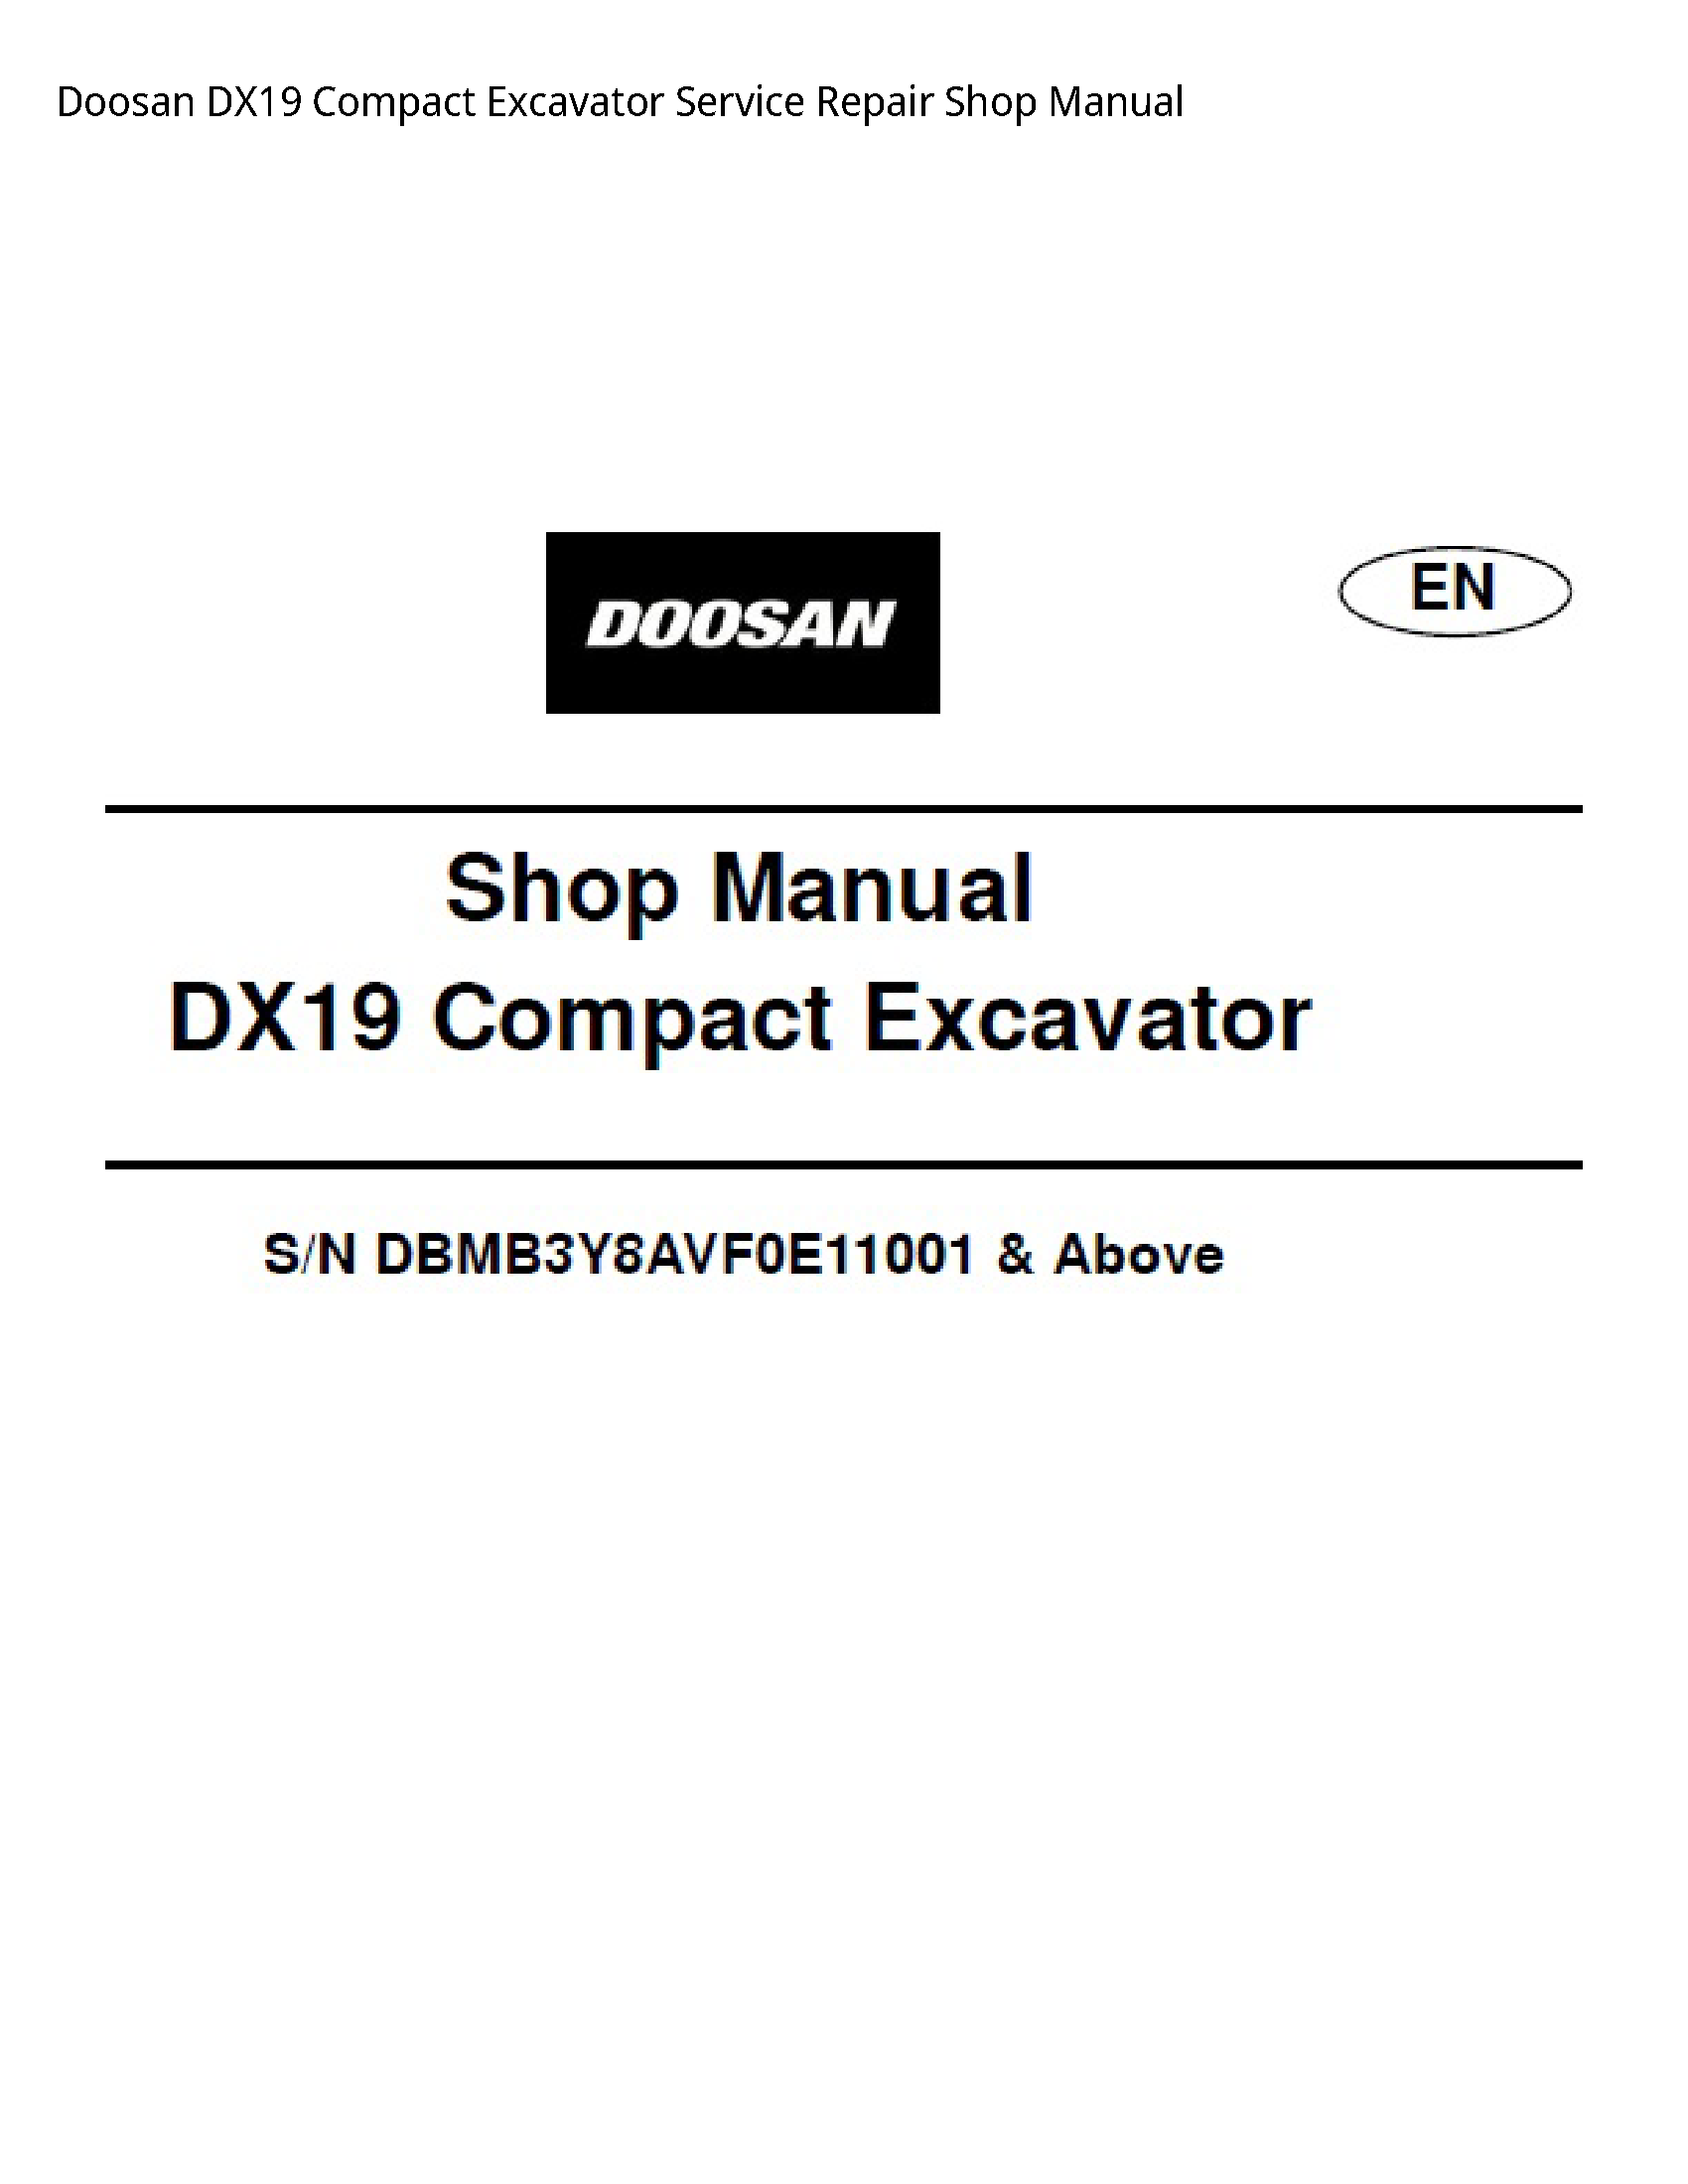 Doosan DX19 Compact Excavator manual